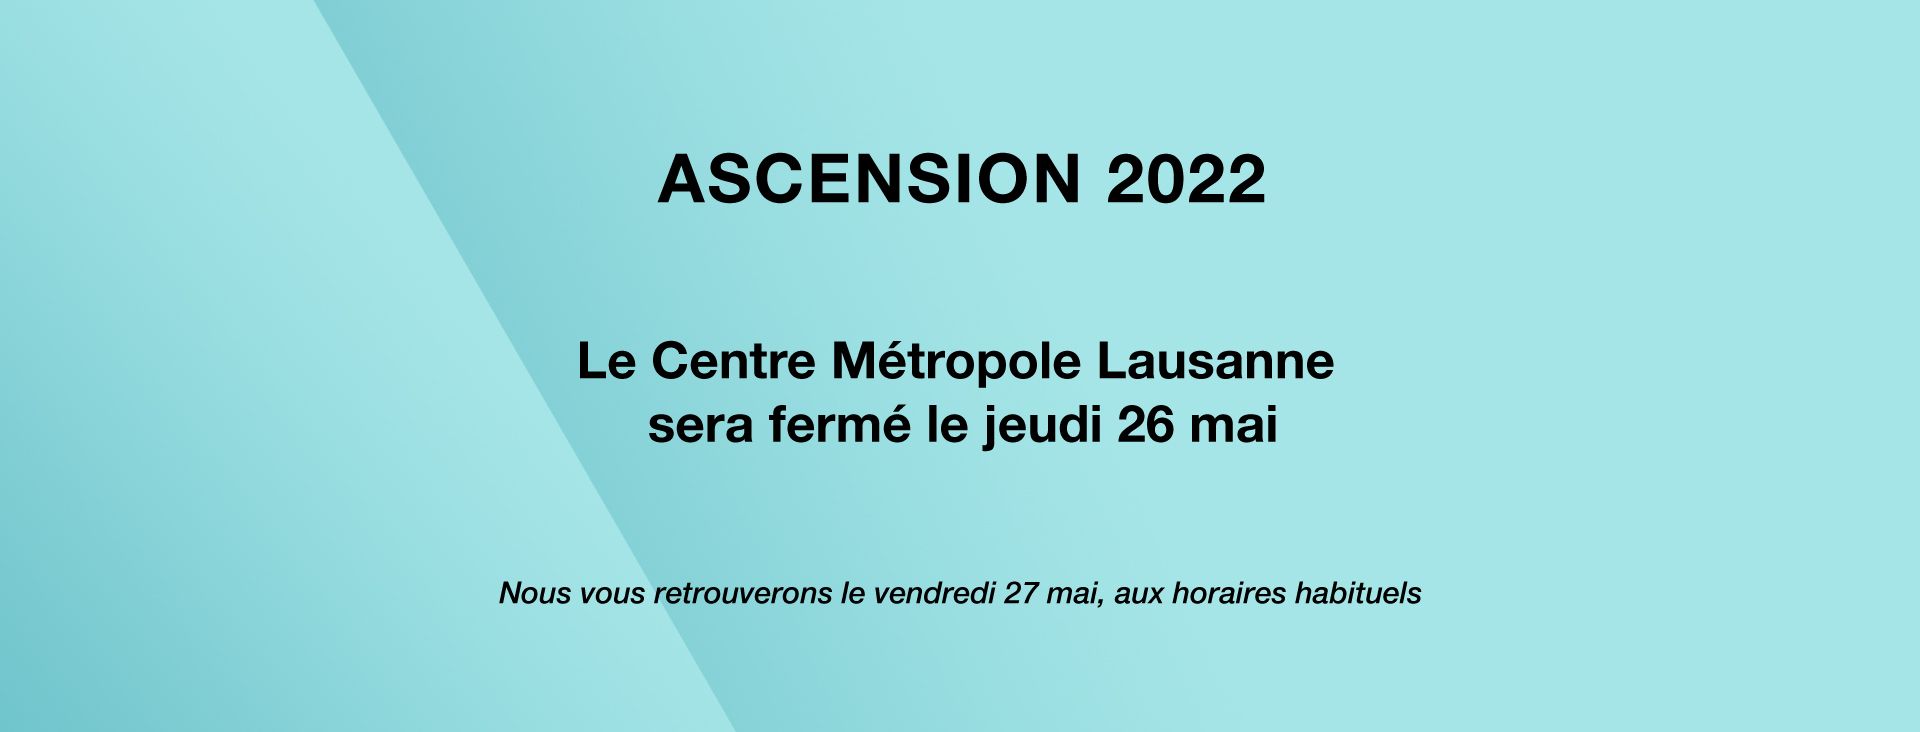 Ascension_2022_WEBSITE_1920x732